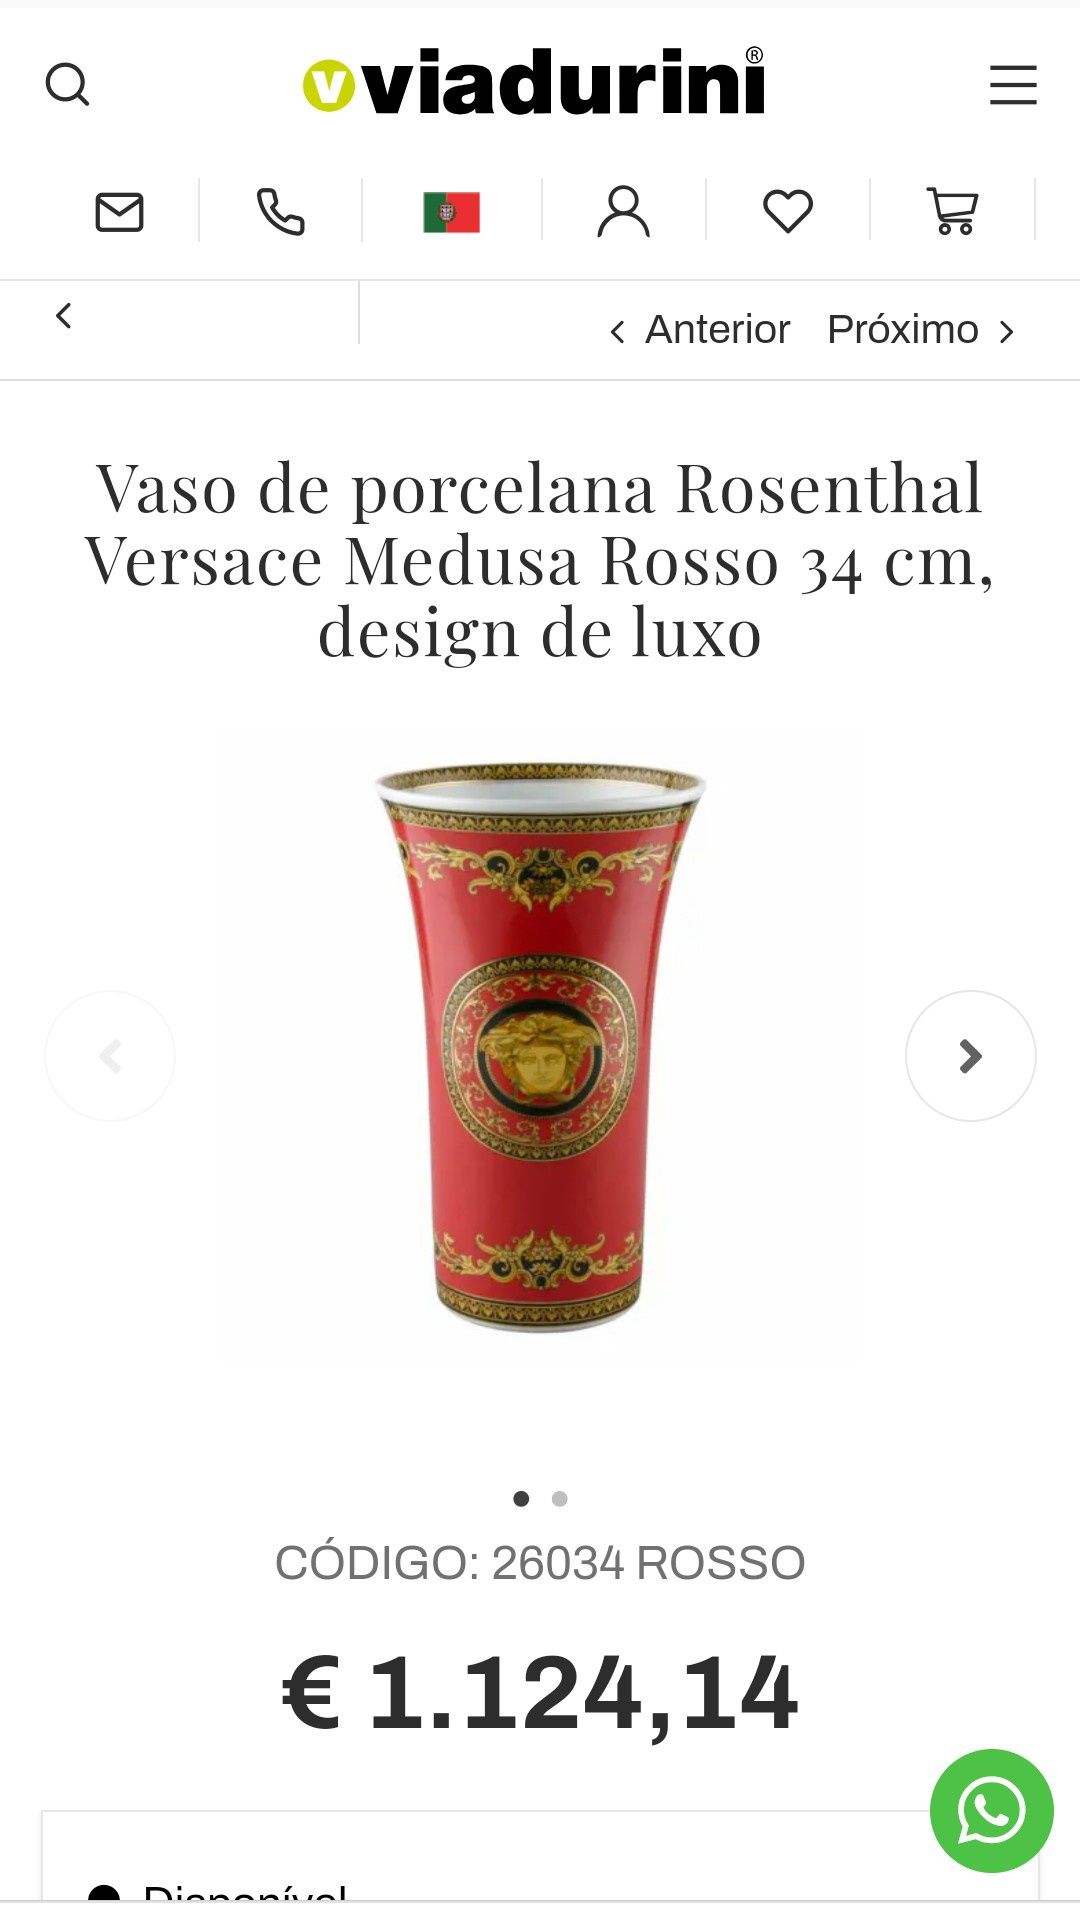 Vaso de porcelana Rosenthal Versace Medusa Rosso 34 cm